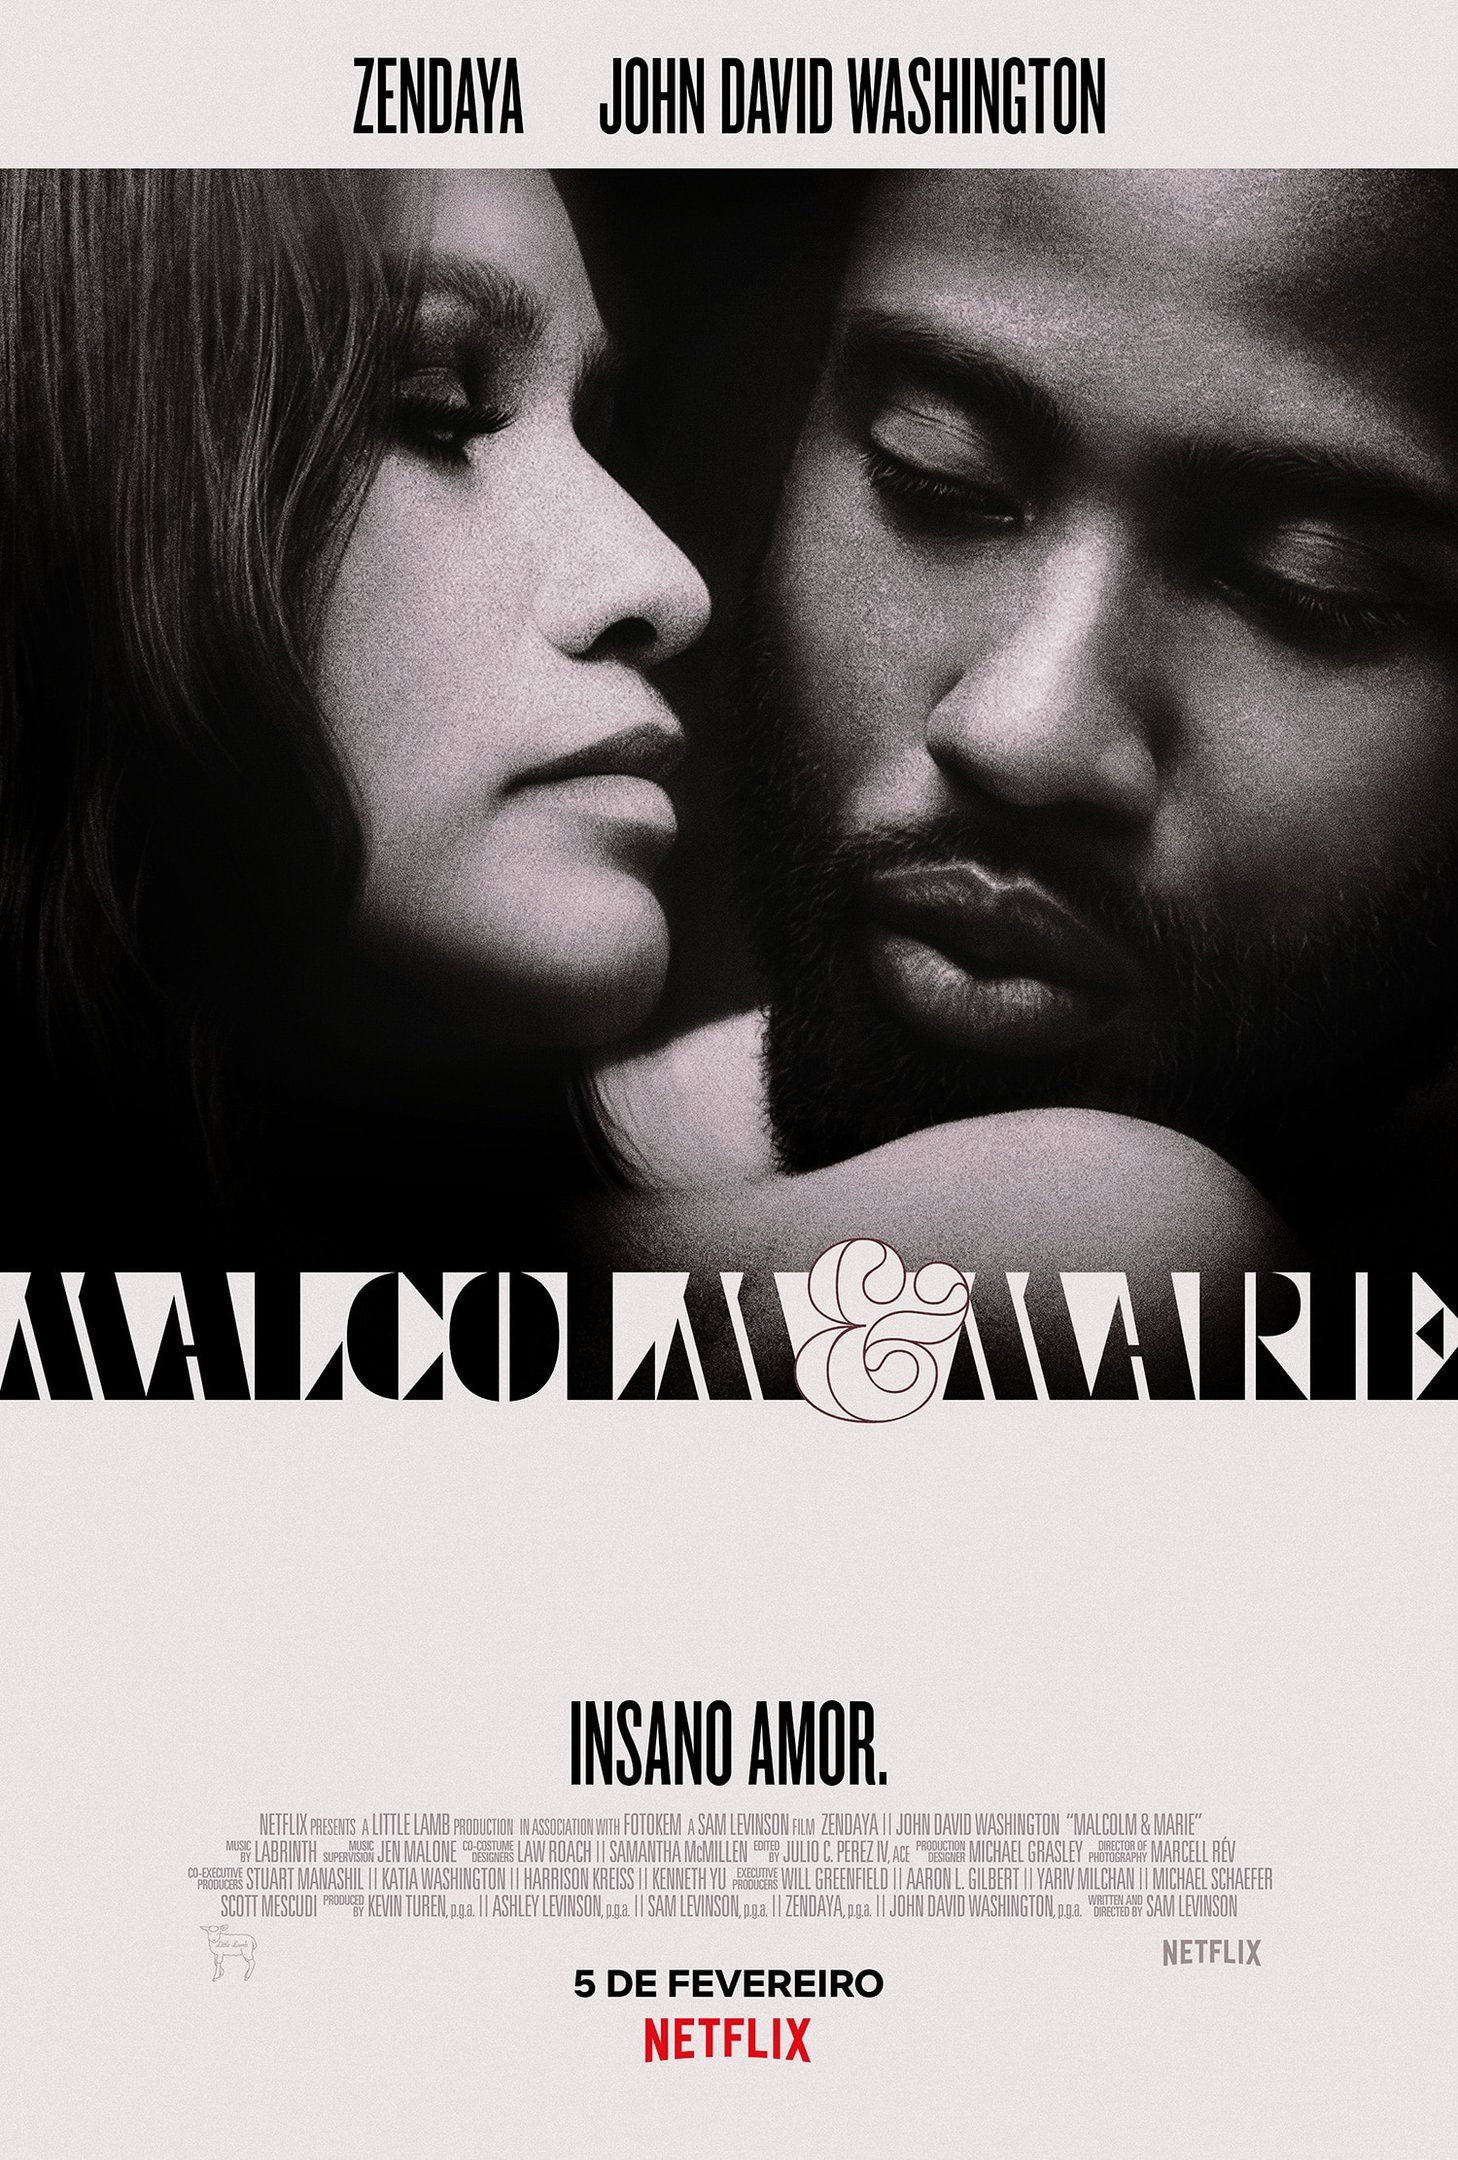 Malcolm & Marie, filme estrelado por Zendaya, ganha trailer intenso e  pôster - NerdBunker